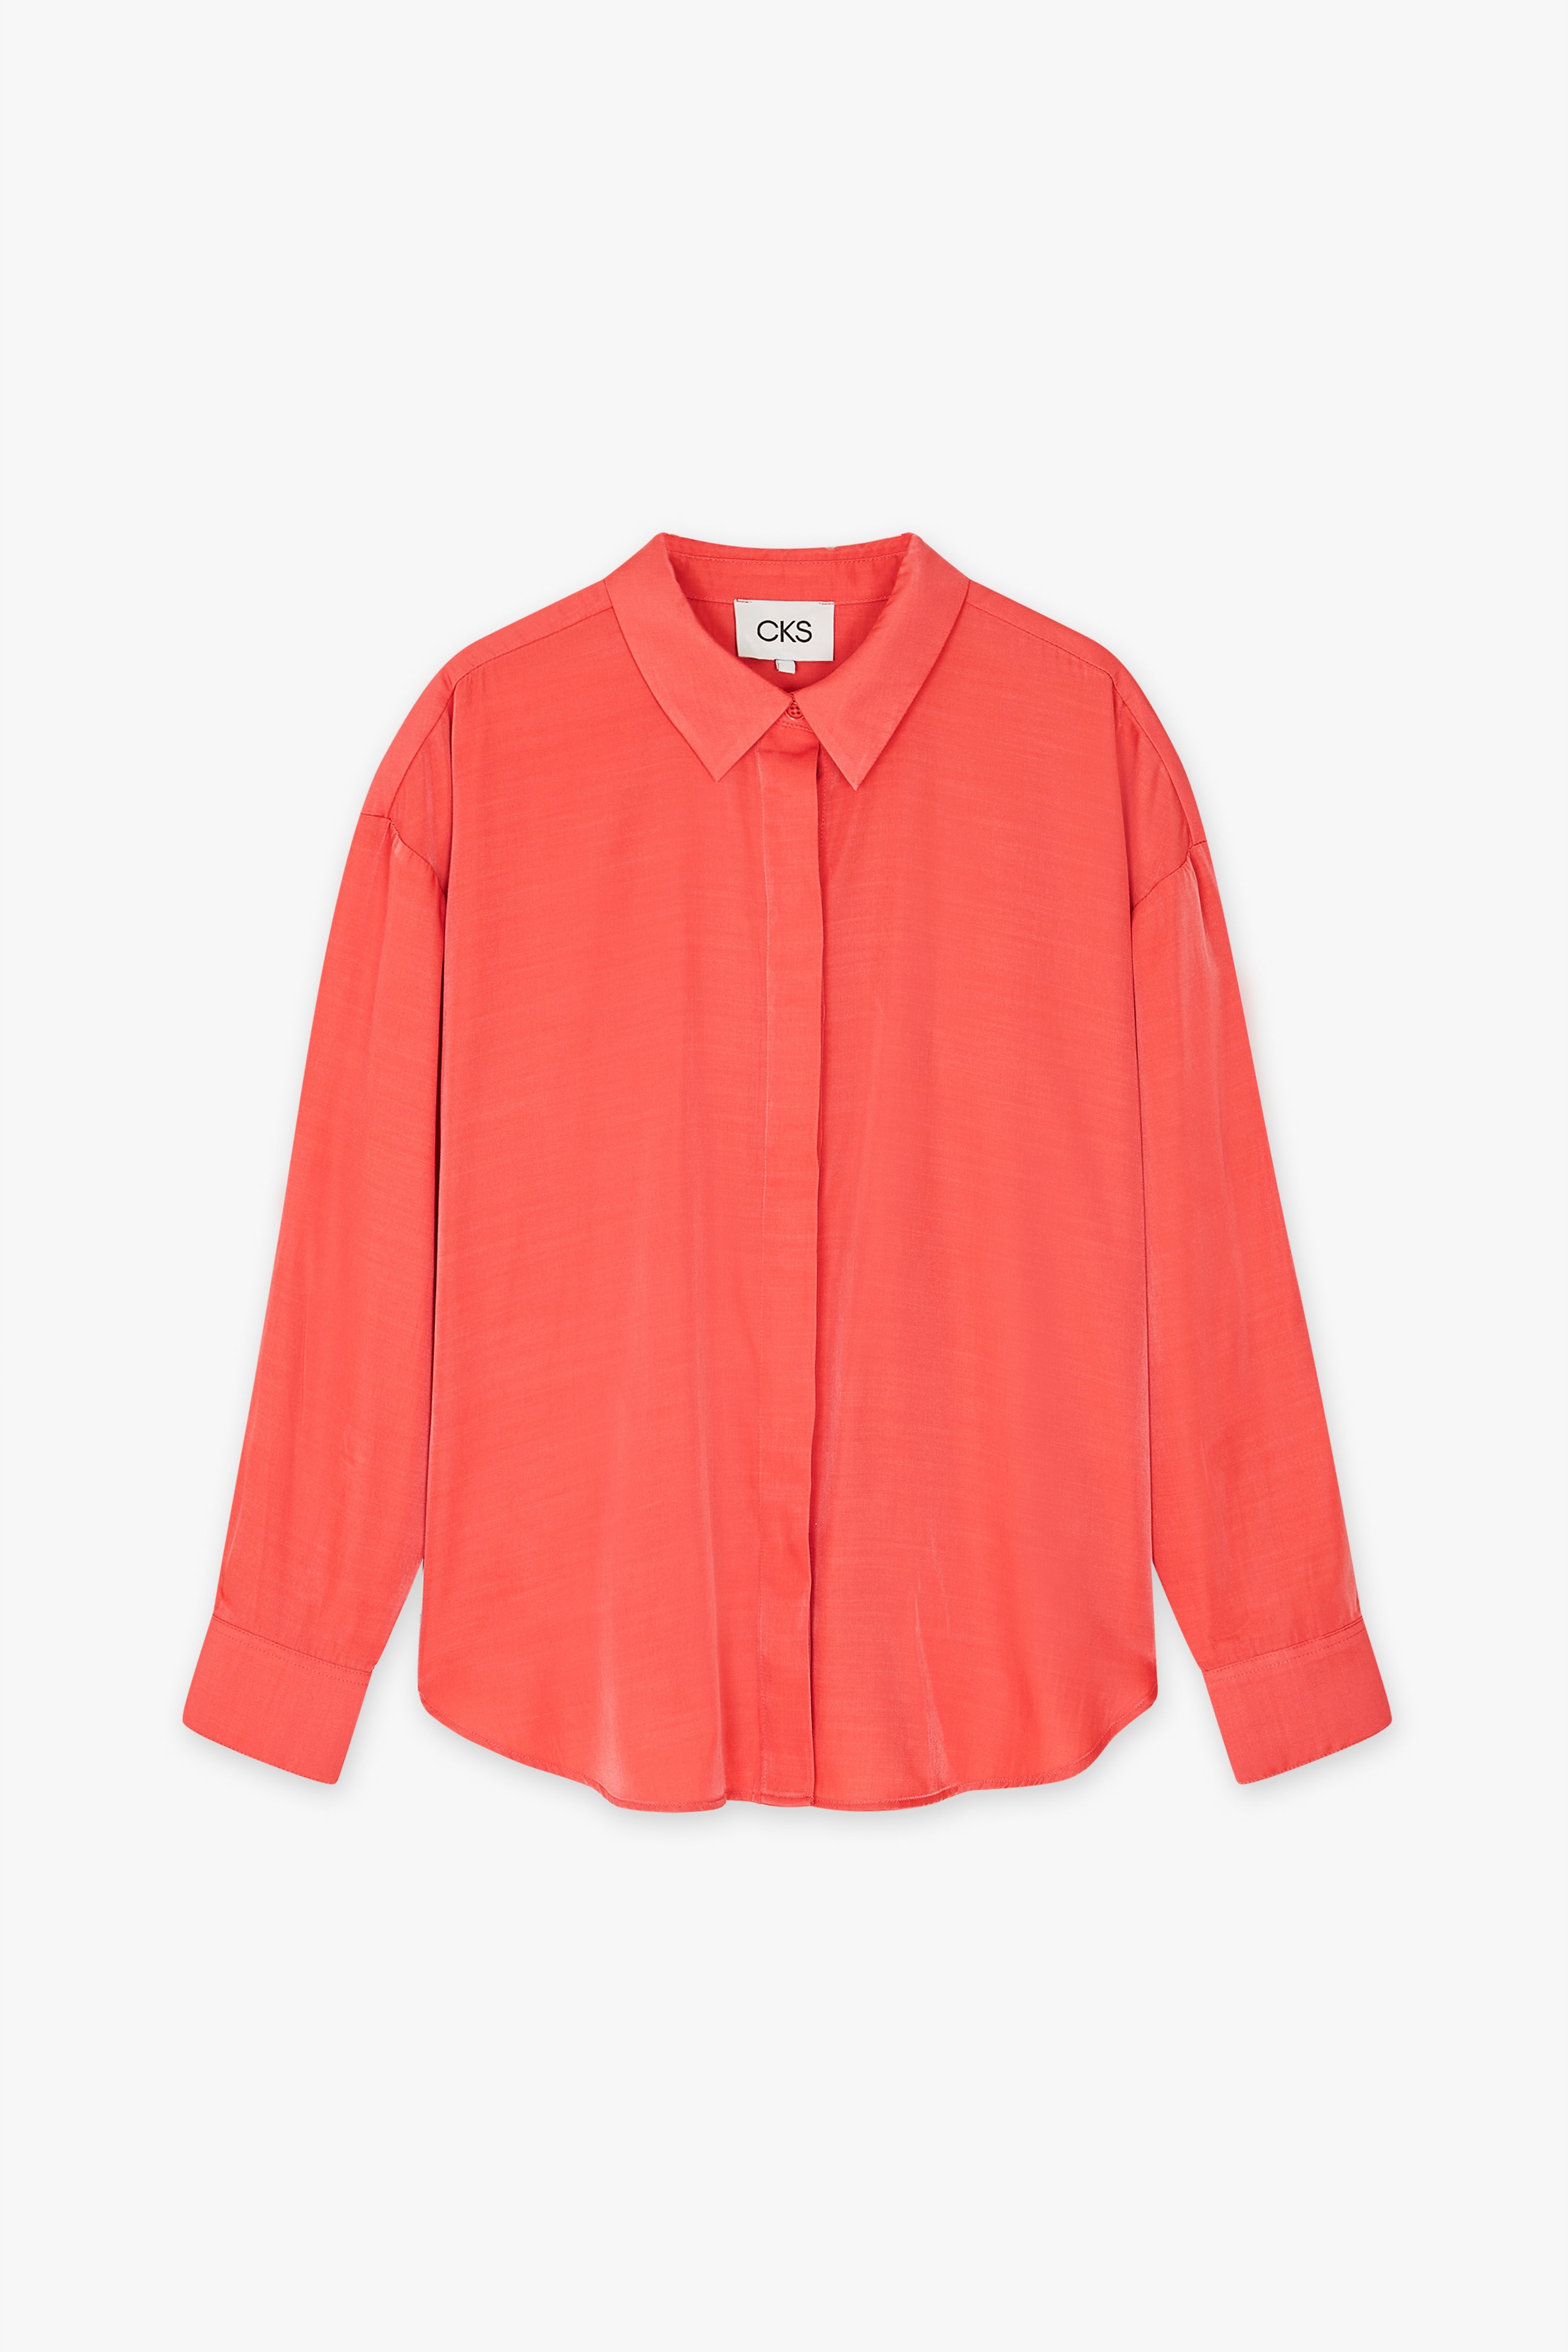 CKS Dames - RUTTENS - blouse lange mouwen - roze